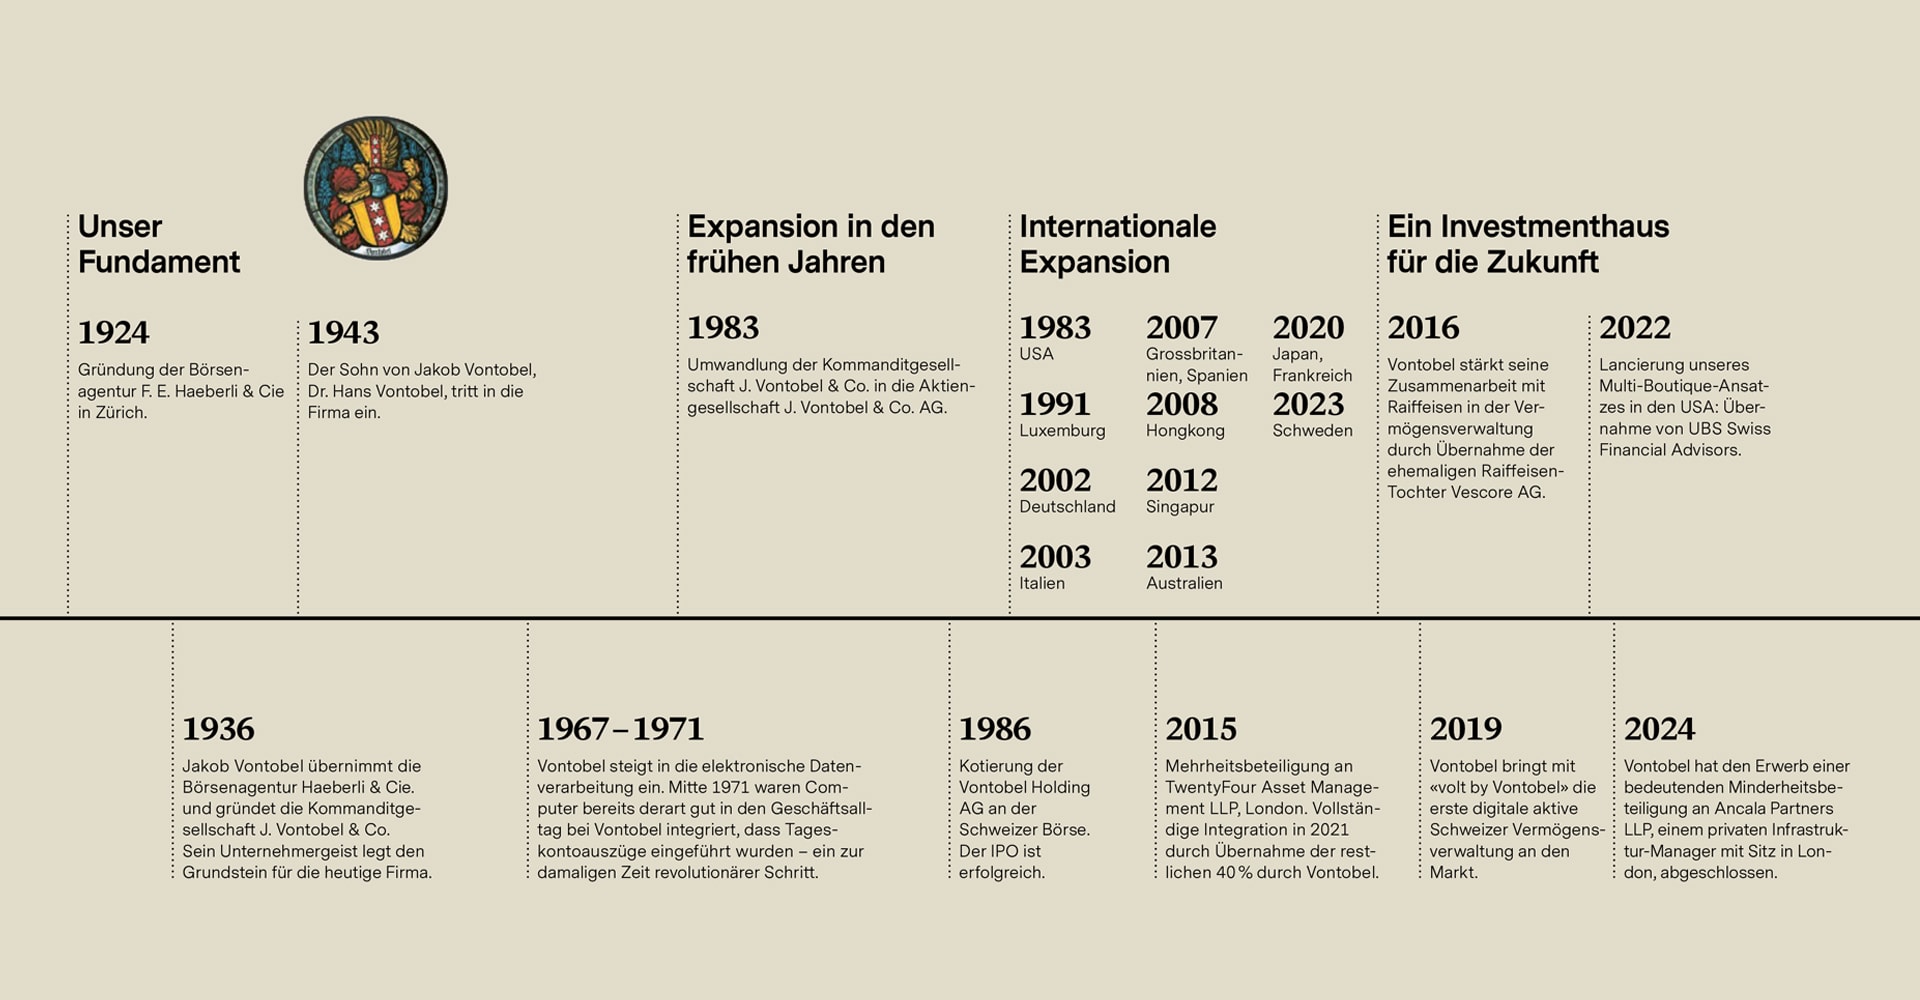 Die Unternehmensgeschichte von Vontobel - Zeitstrahl von 1924 bis 2022